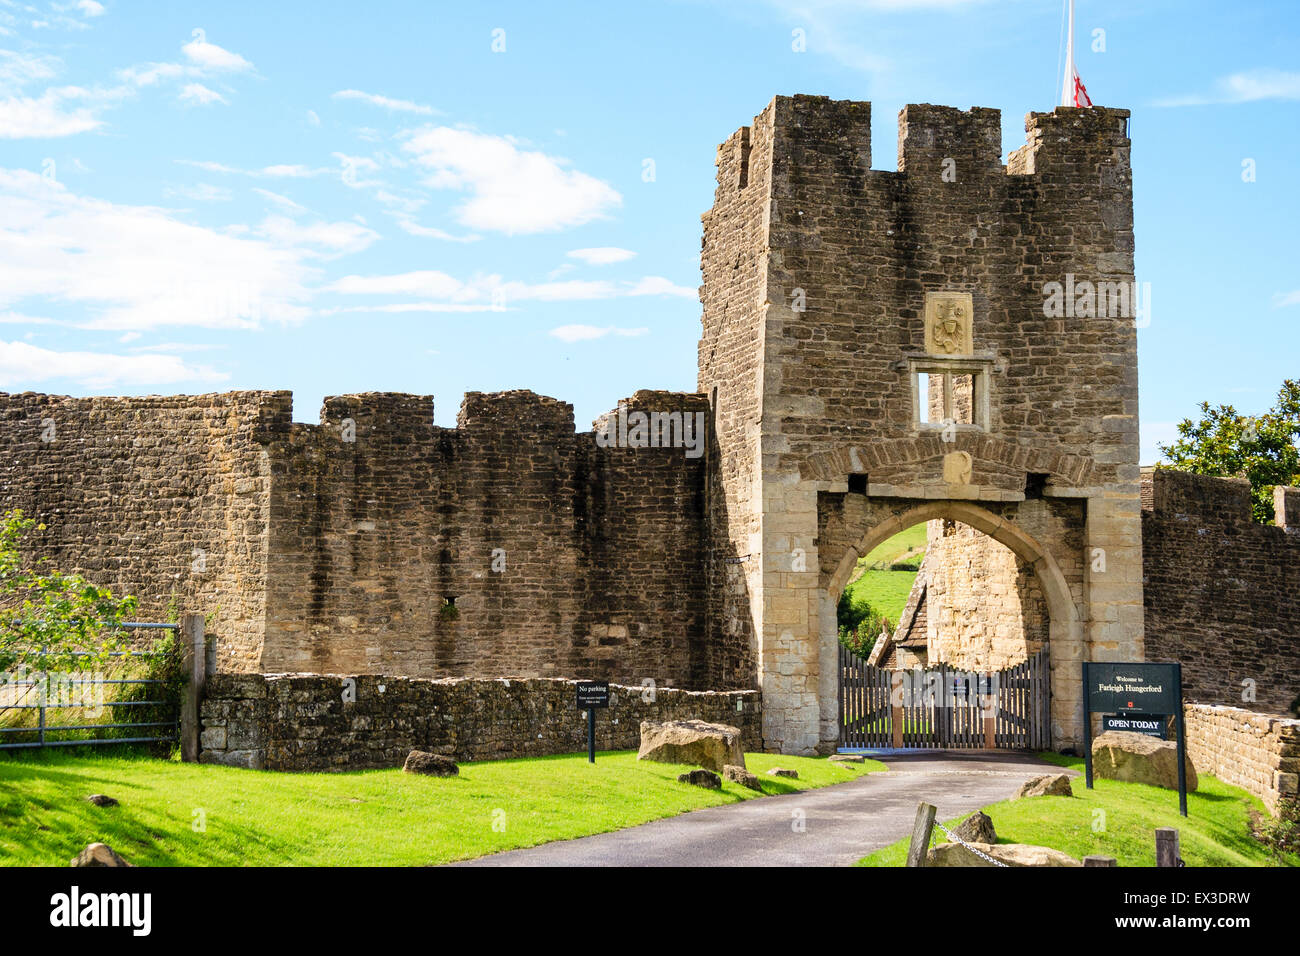 Die Ruinen von Farleigh Hungerford Castle. Das 14. Jahrhundert Osten Torhaus, der Haupteingang zum Schloss mit der äußeren Ringmauer und blauer Himmel. Stockfoto